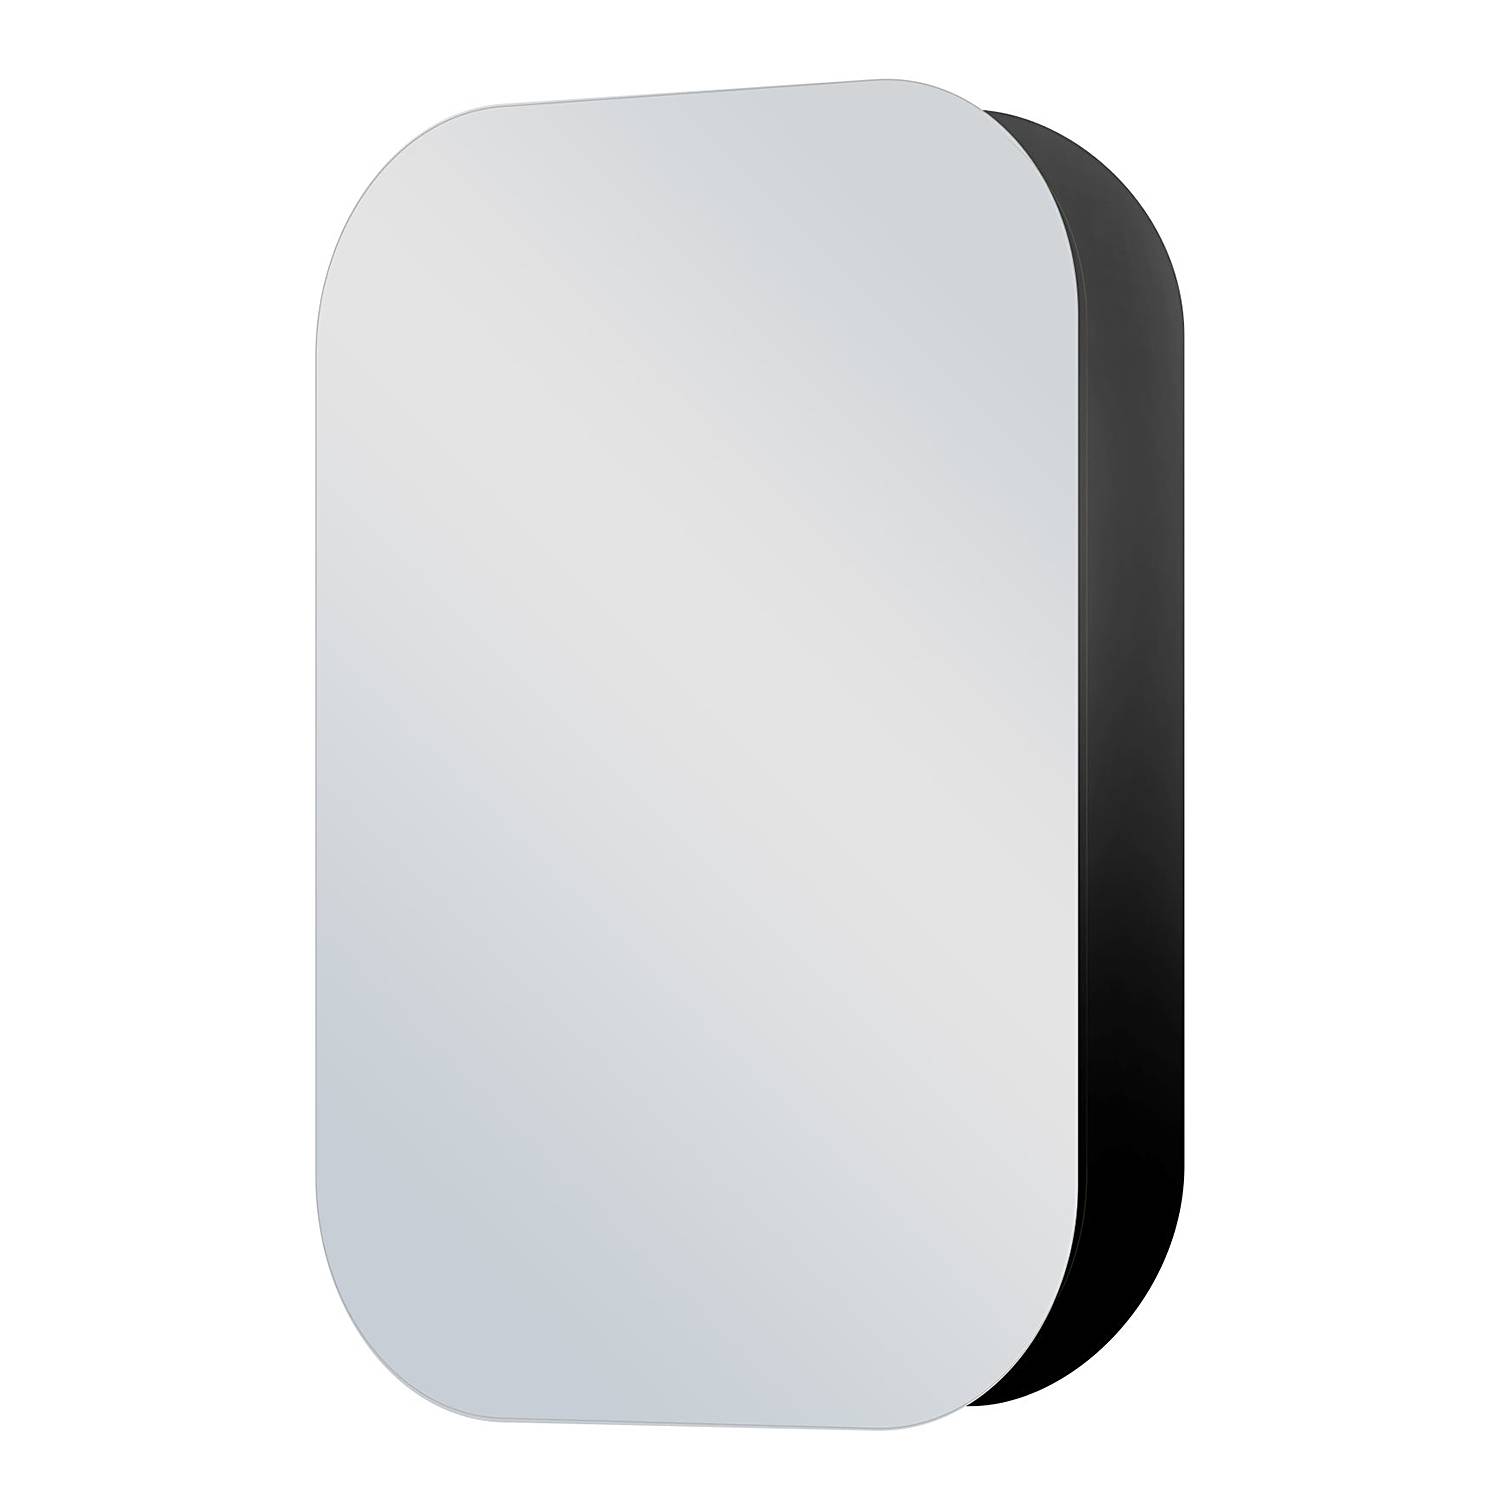 Spiegelschrank Talos Oval kaufen | home24